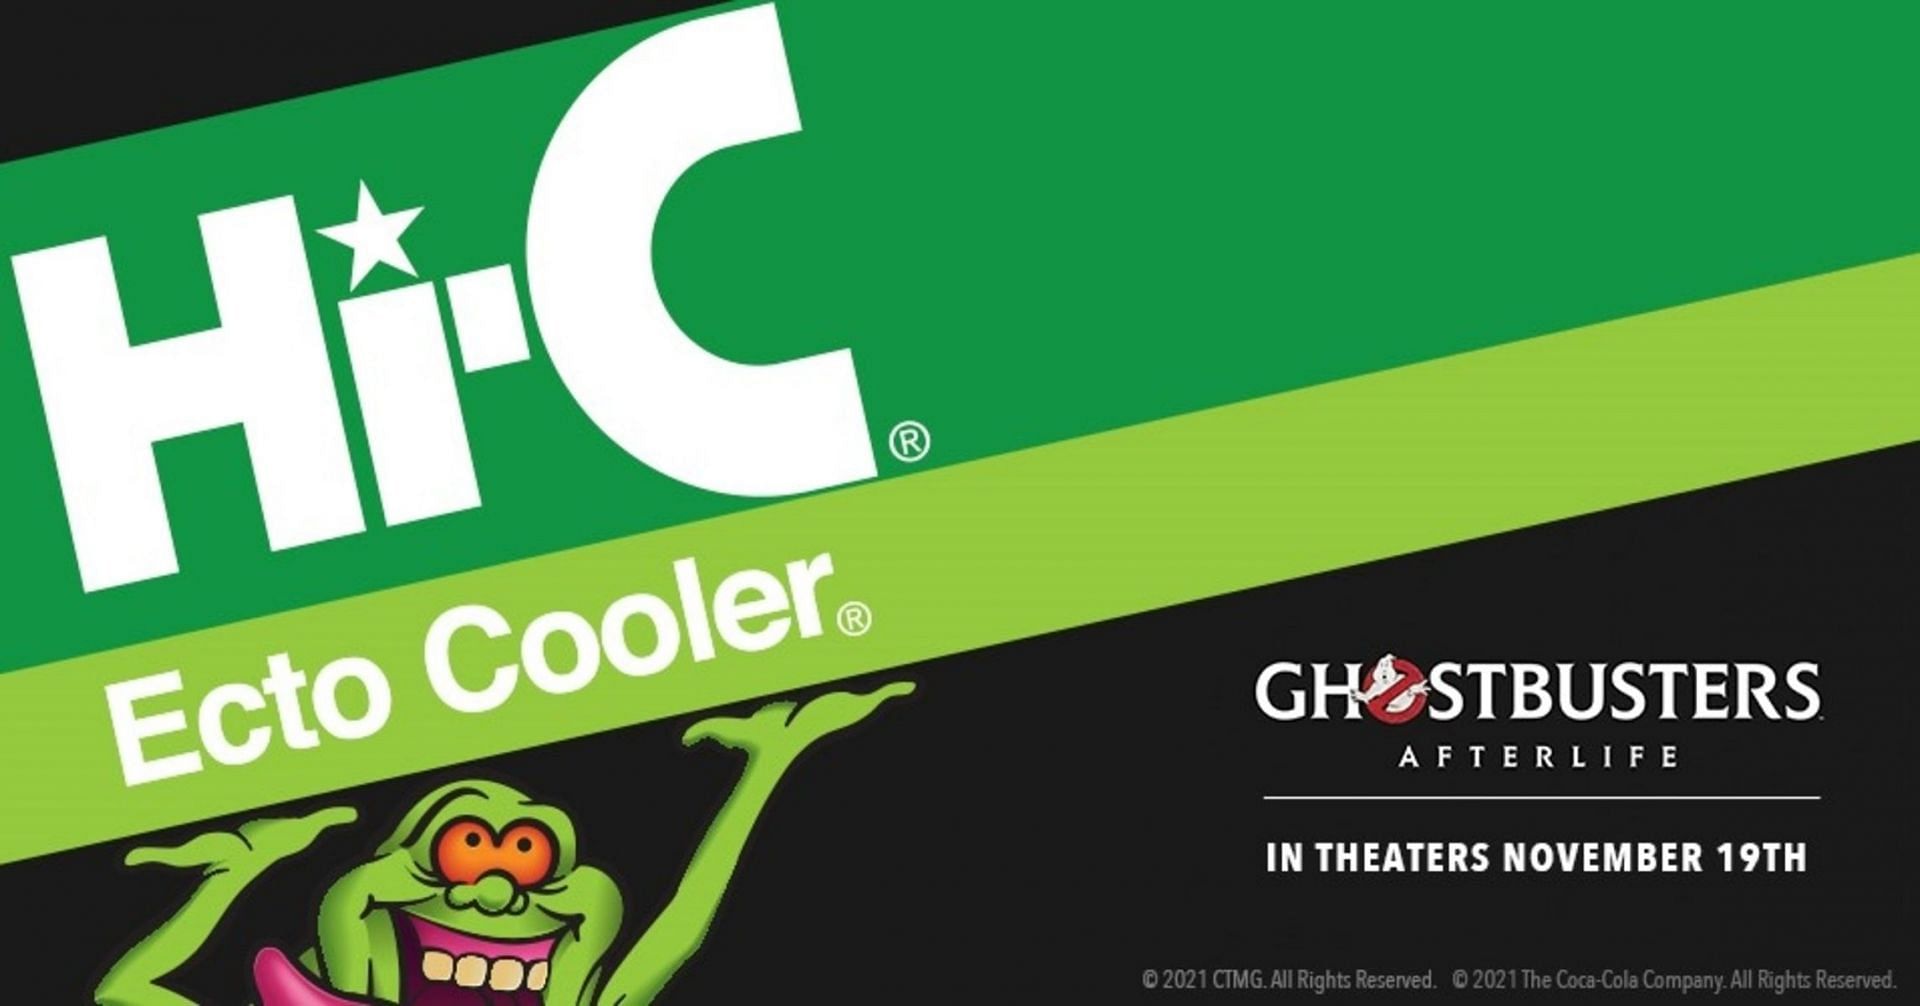 Ecto Cooler (Image via HI-C/ Coco-Cola)